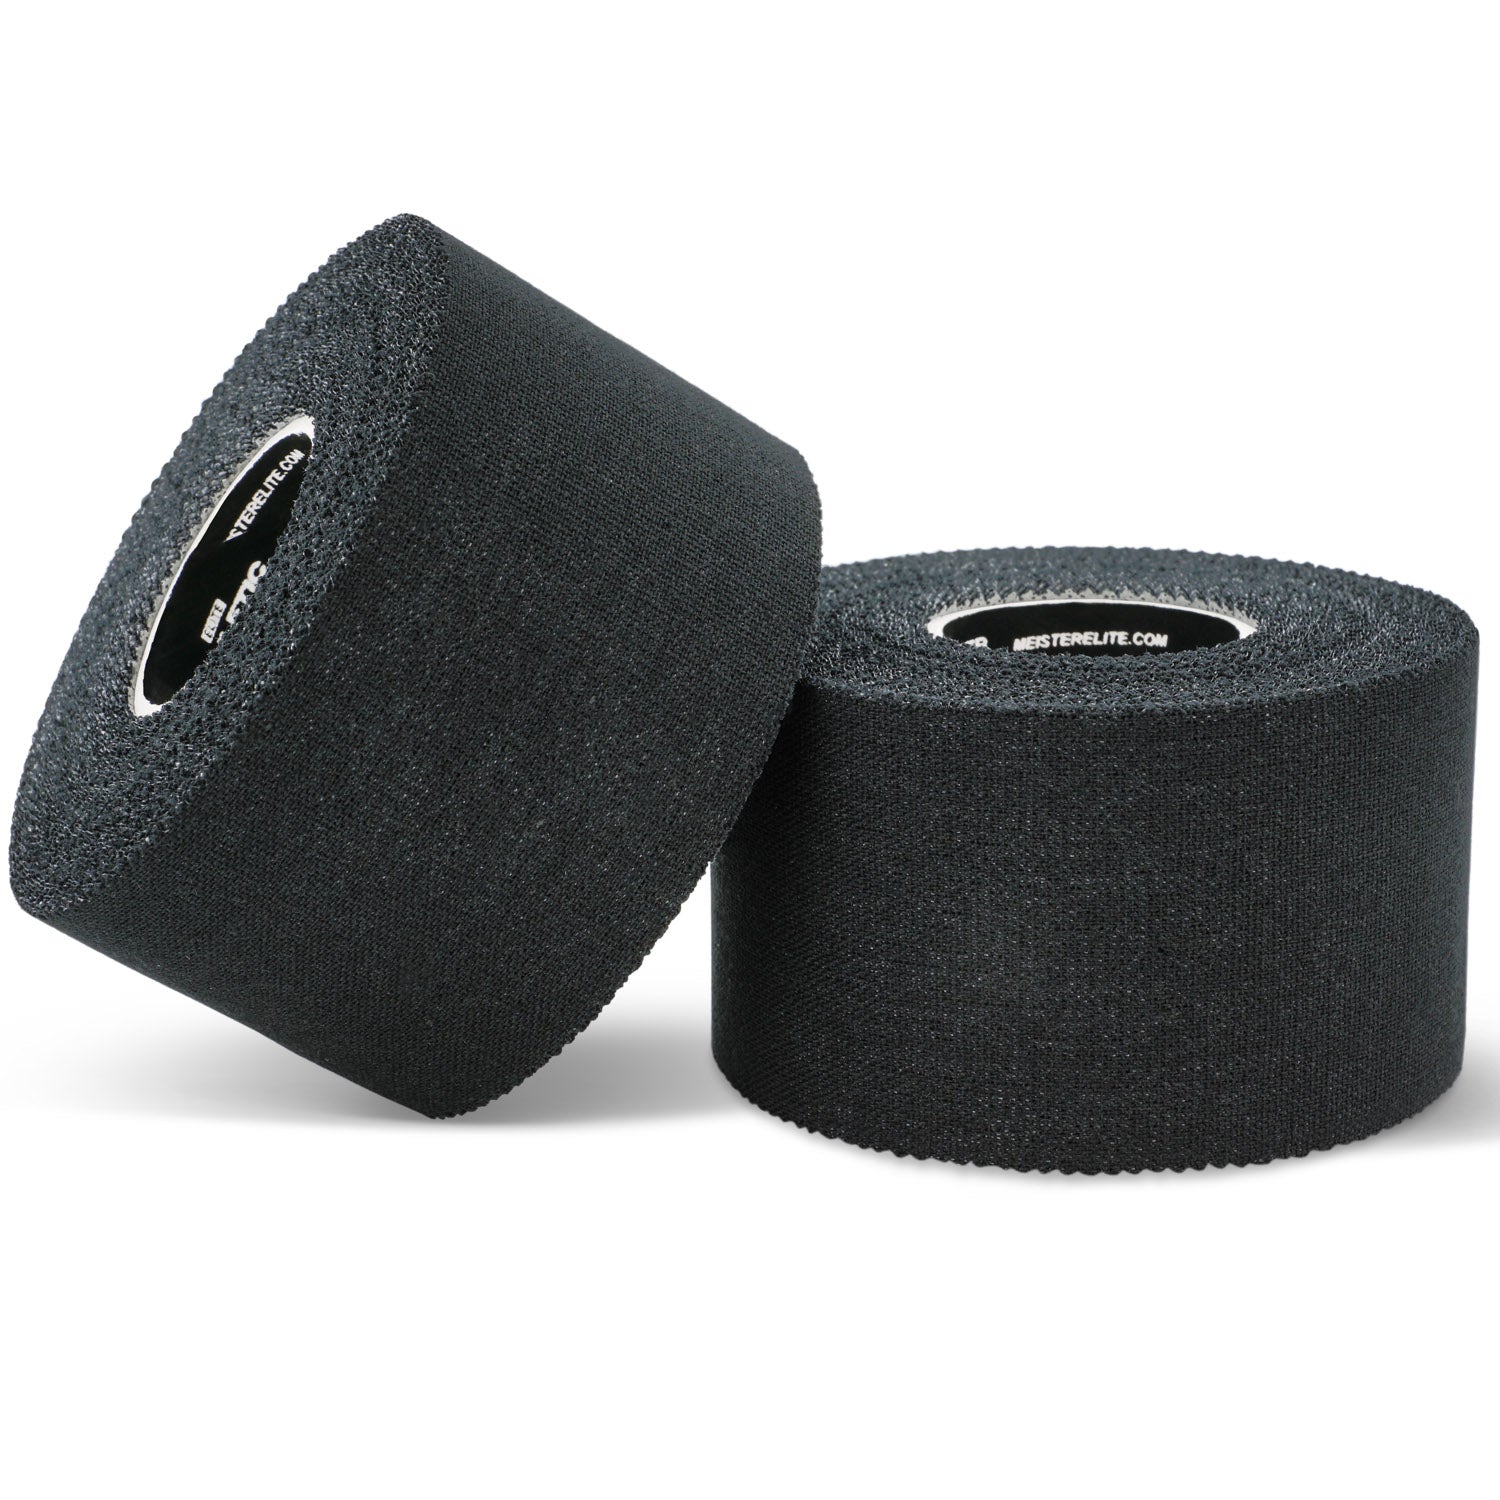 Meister Elite Porous Athletic Tape - 2 Roll Pack - Black